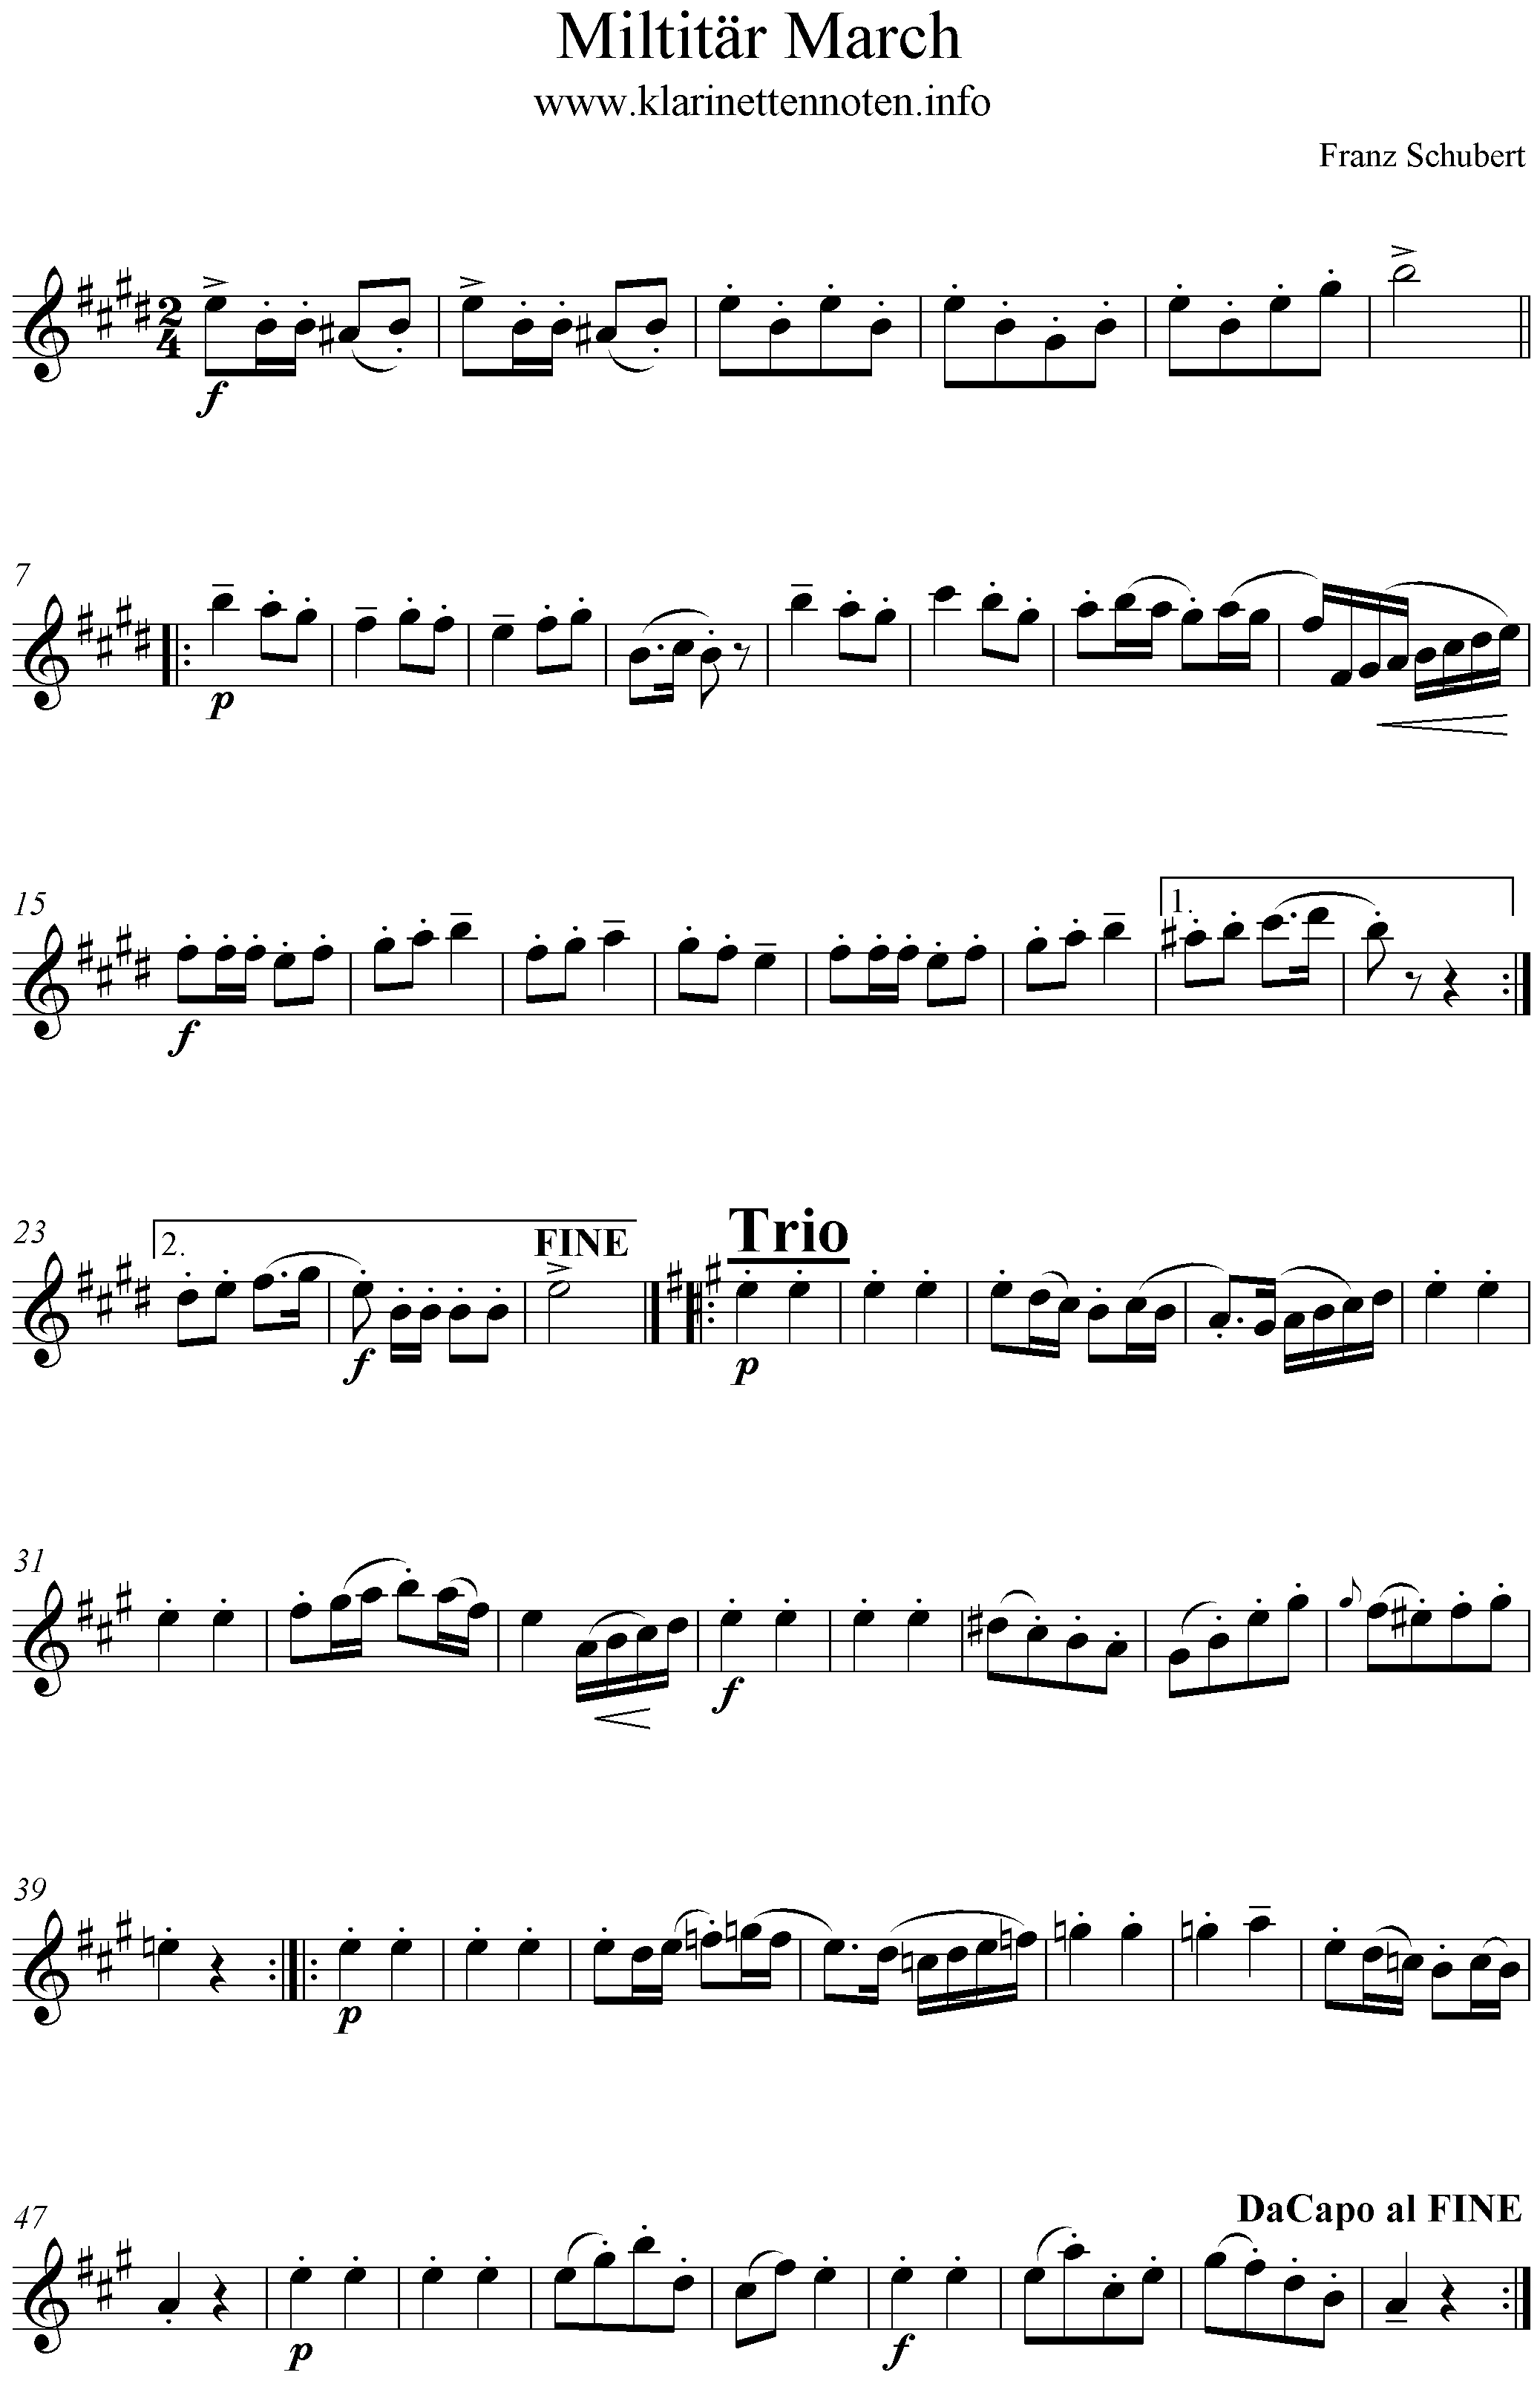 Noten Militärmarsch No1, Schubert, E-Dur